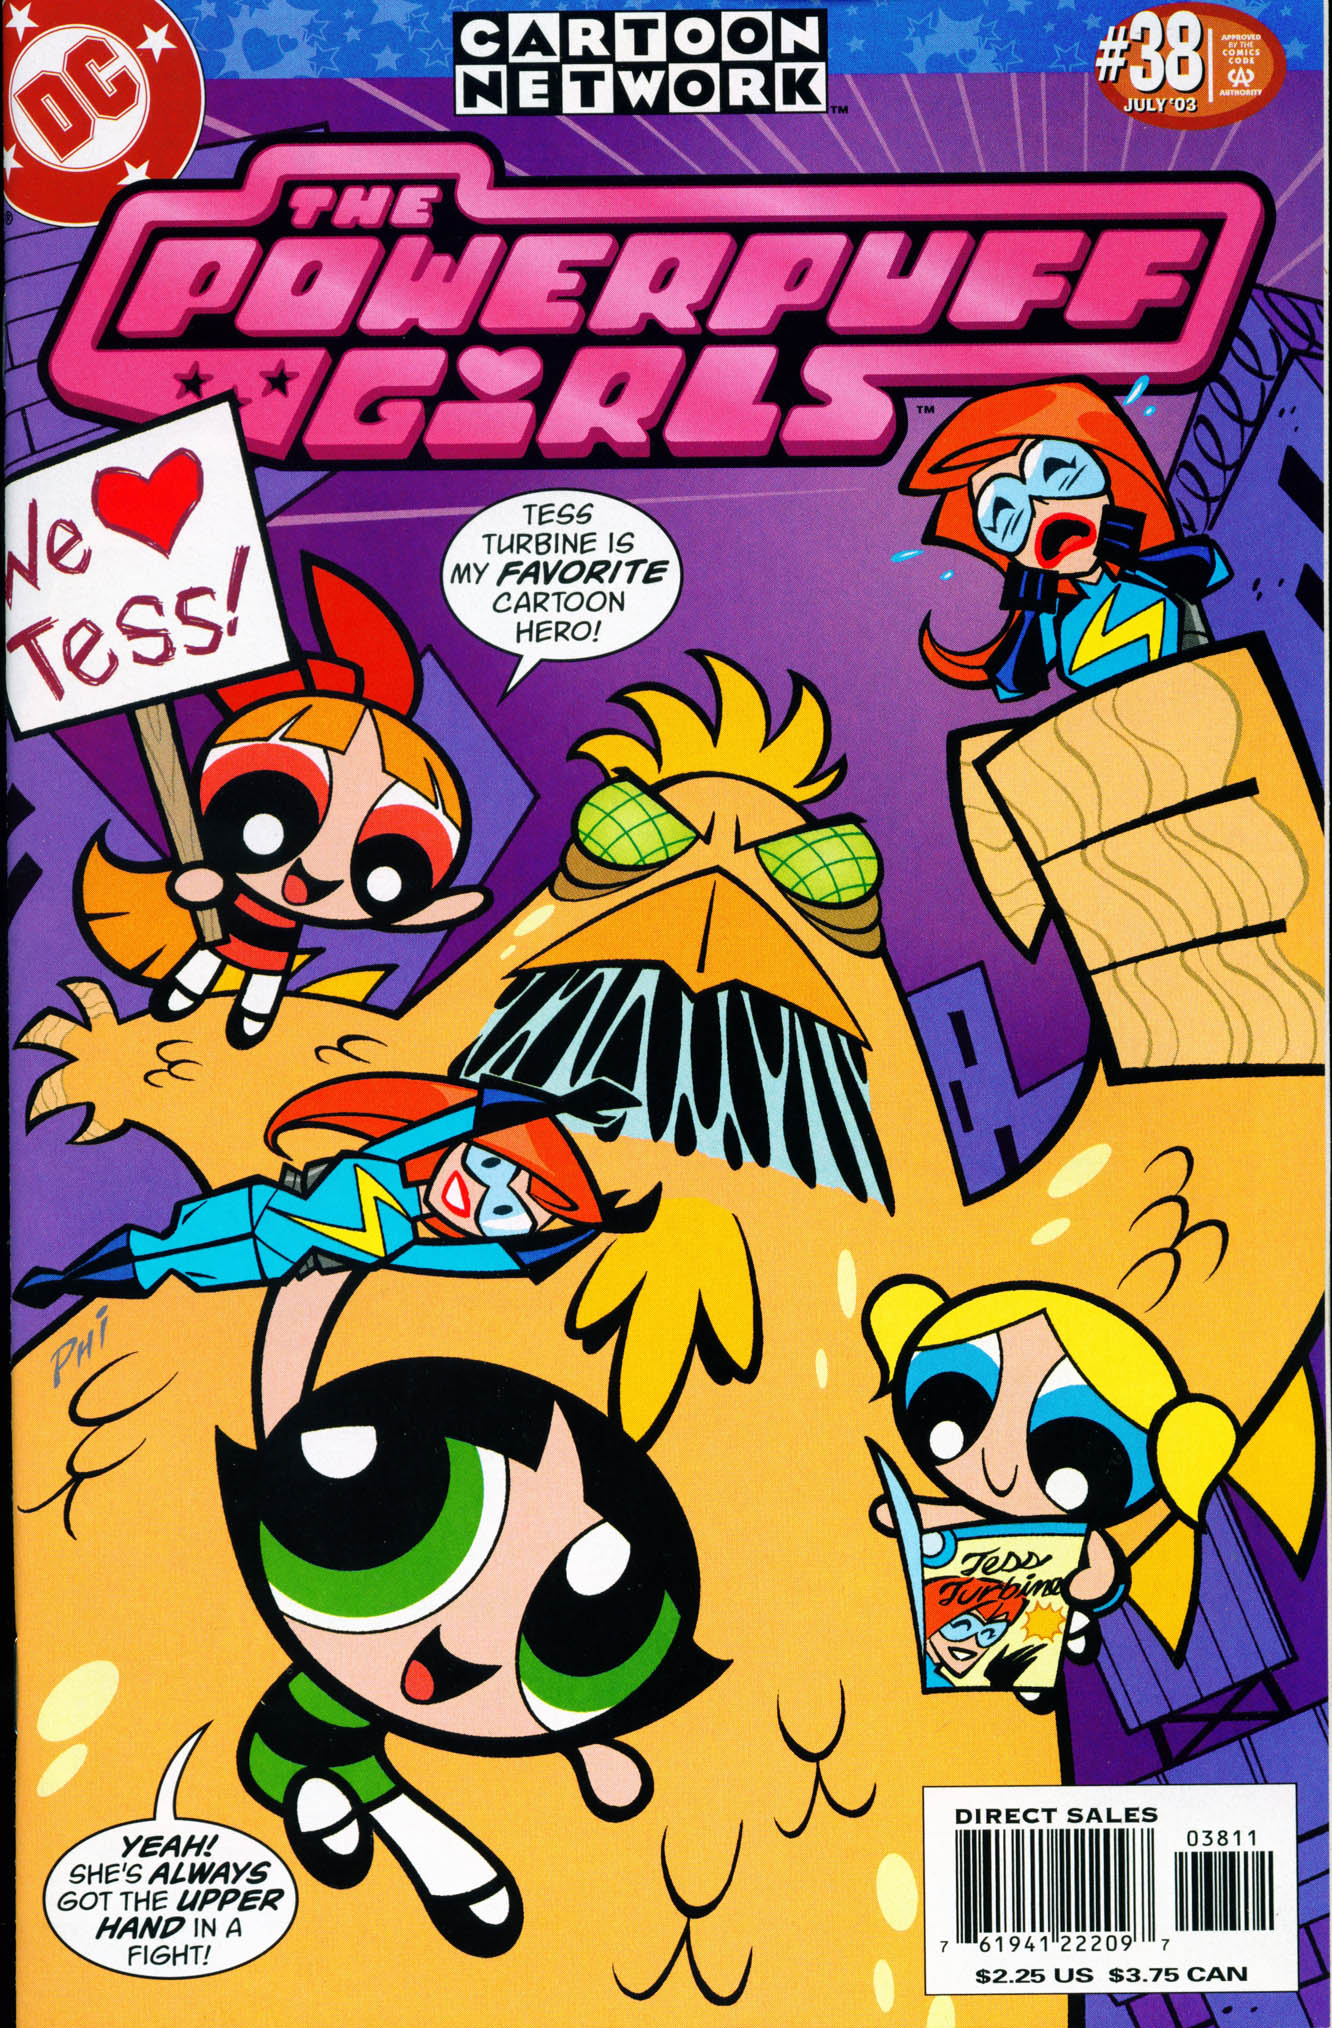 Комикс крошки. Суперкрошки комиксы. Суперкрошки обложка. The Powerpuff girls комиксы. Супер крошки Постер.